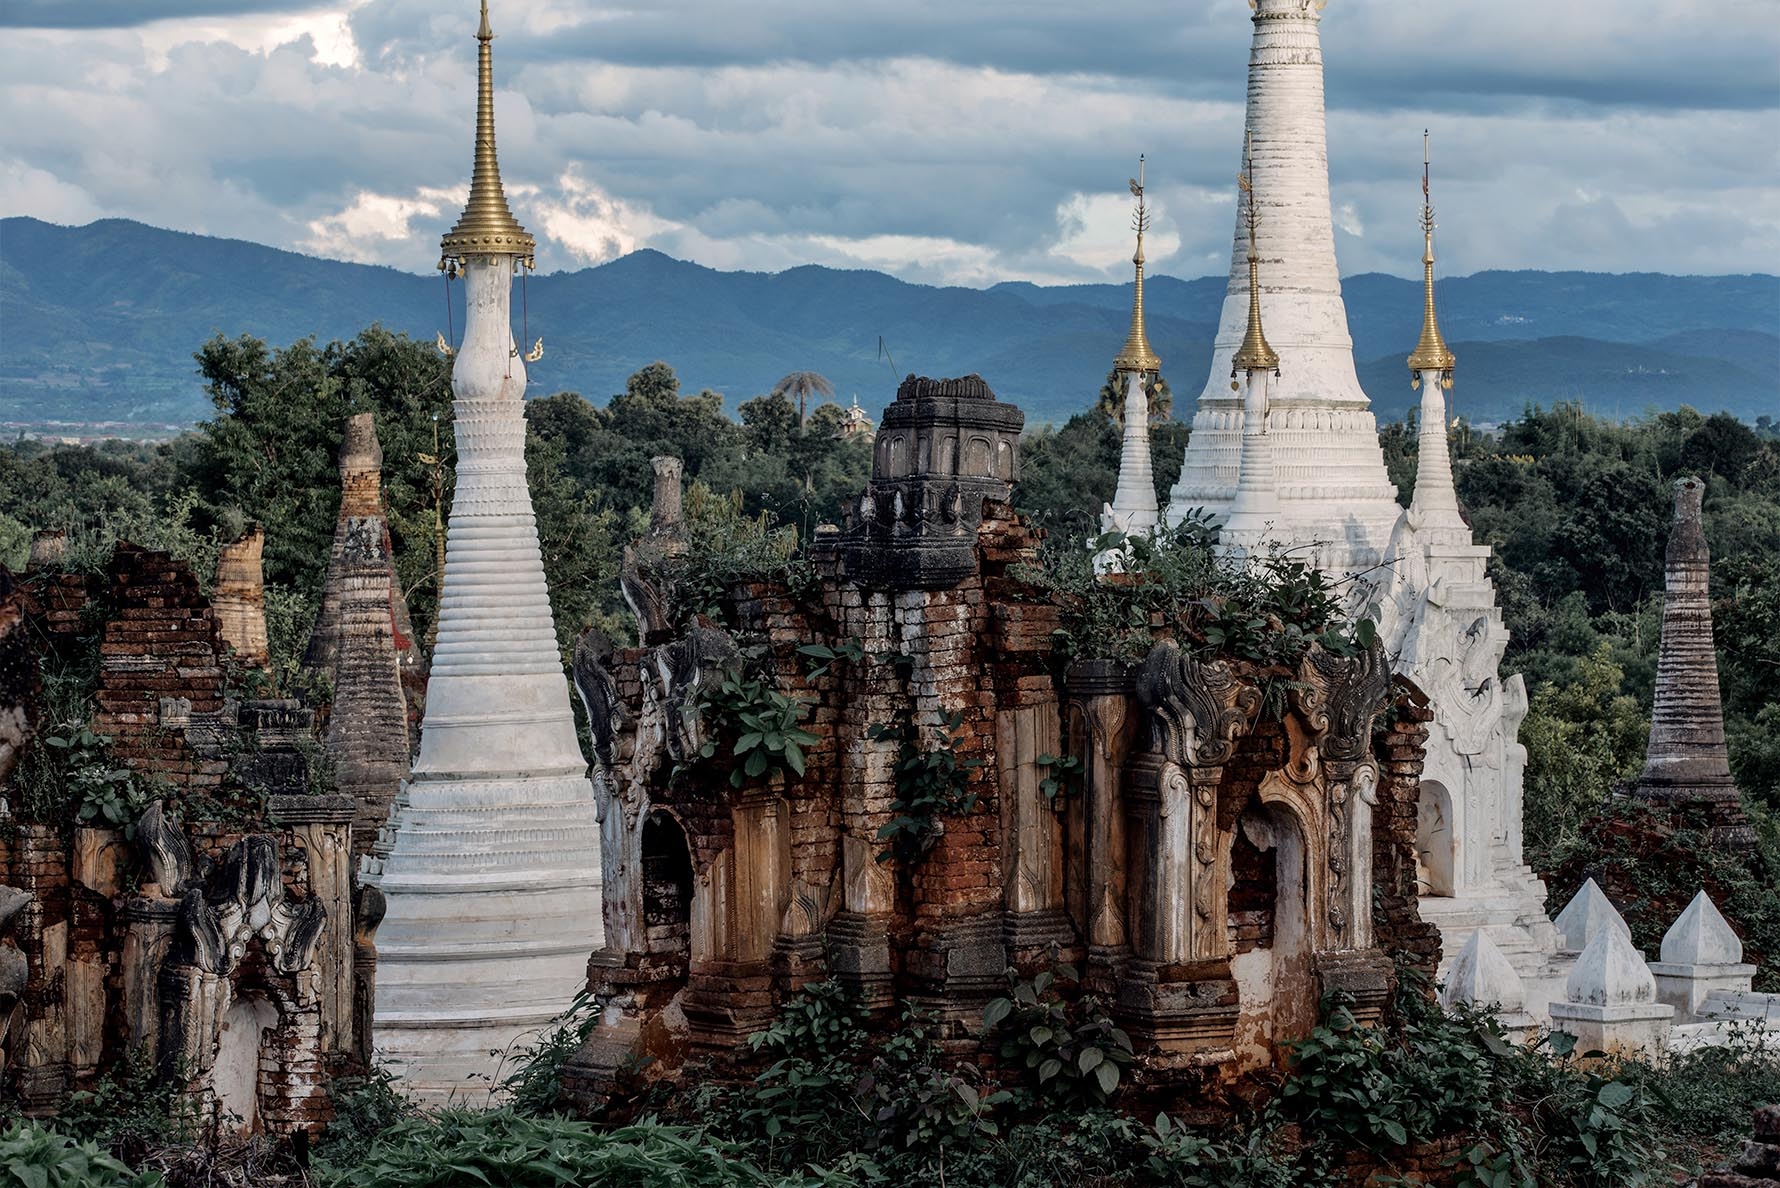 Inle Lake, Inthein or Indein, Paya Shwe Inn Thein stupas